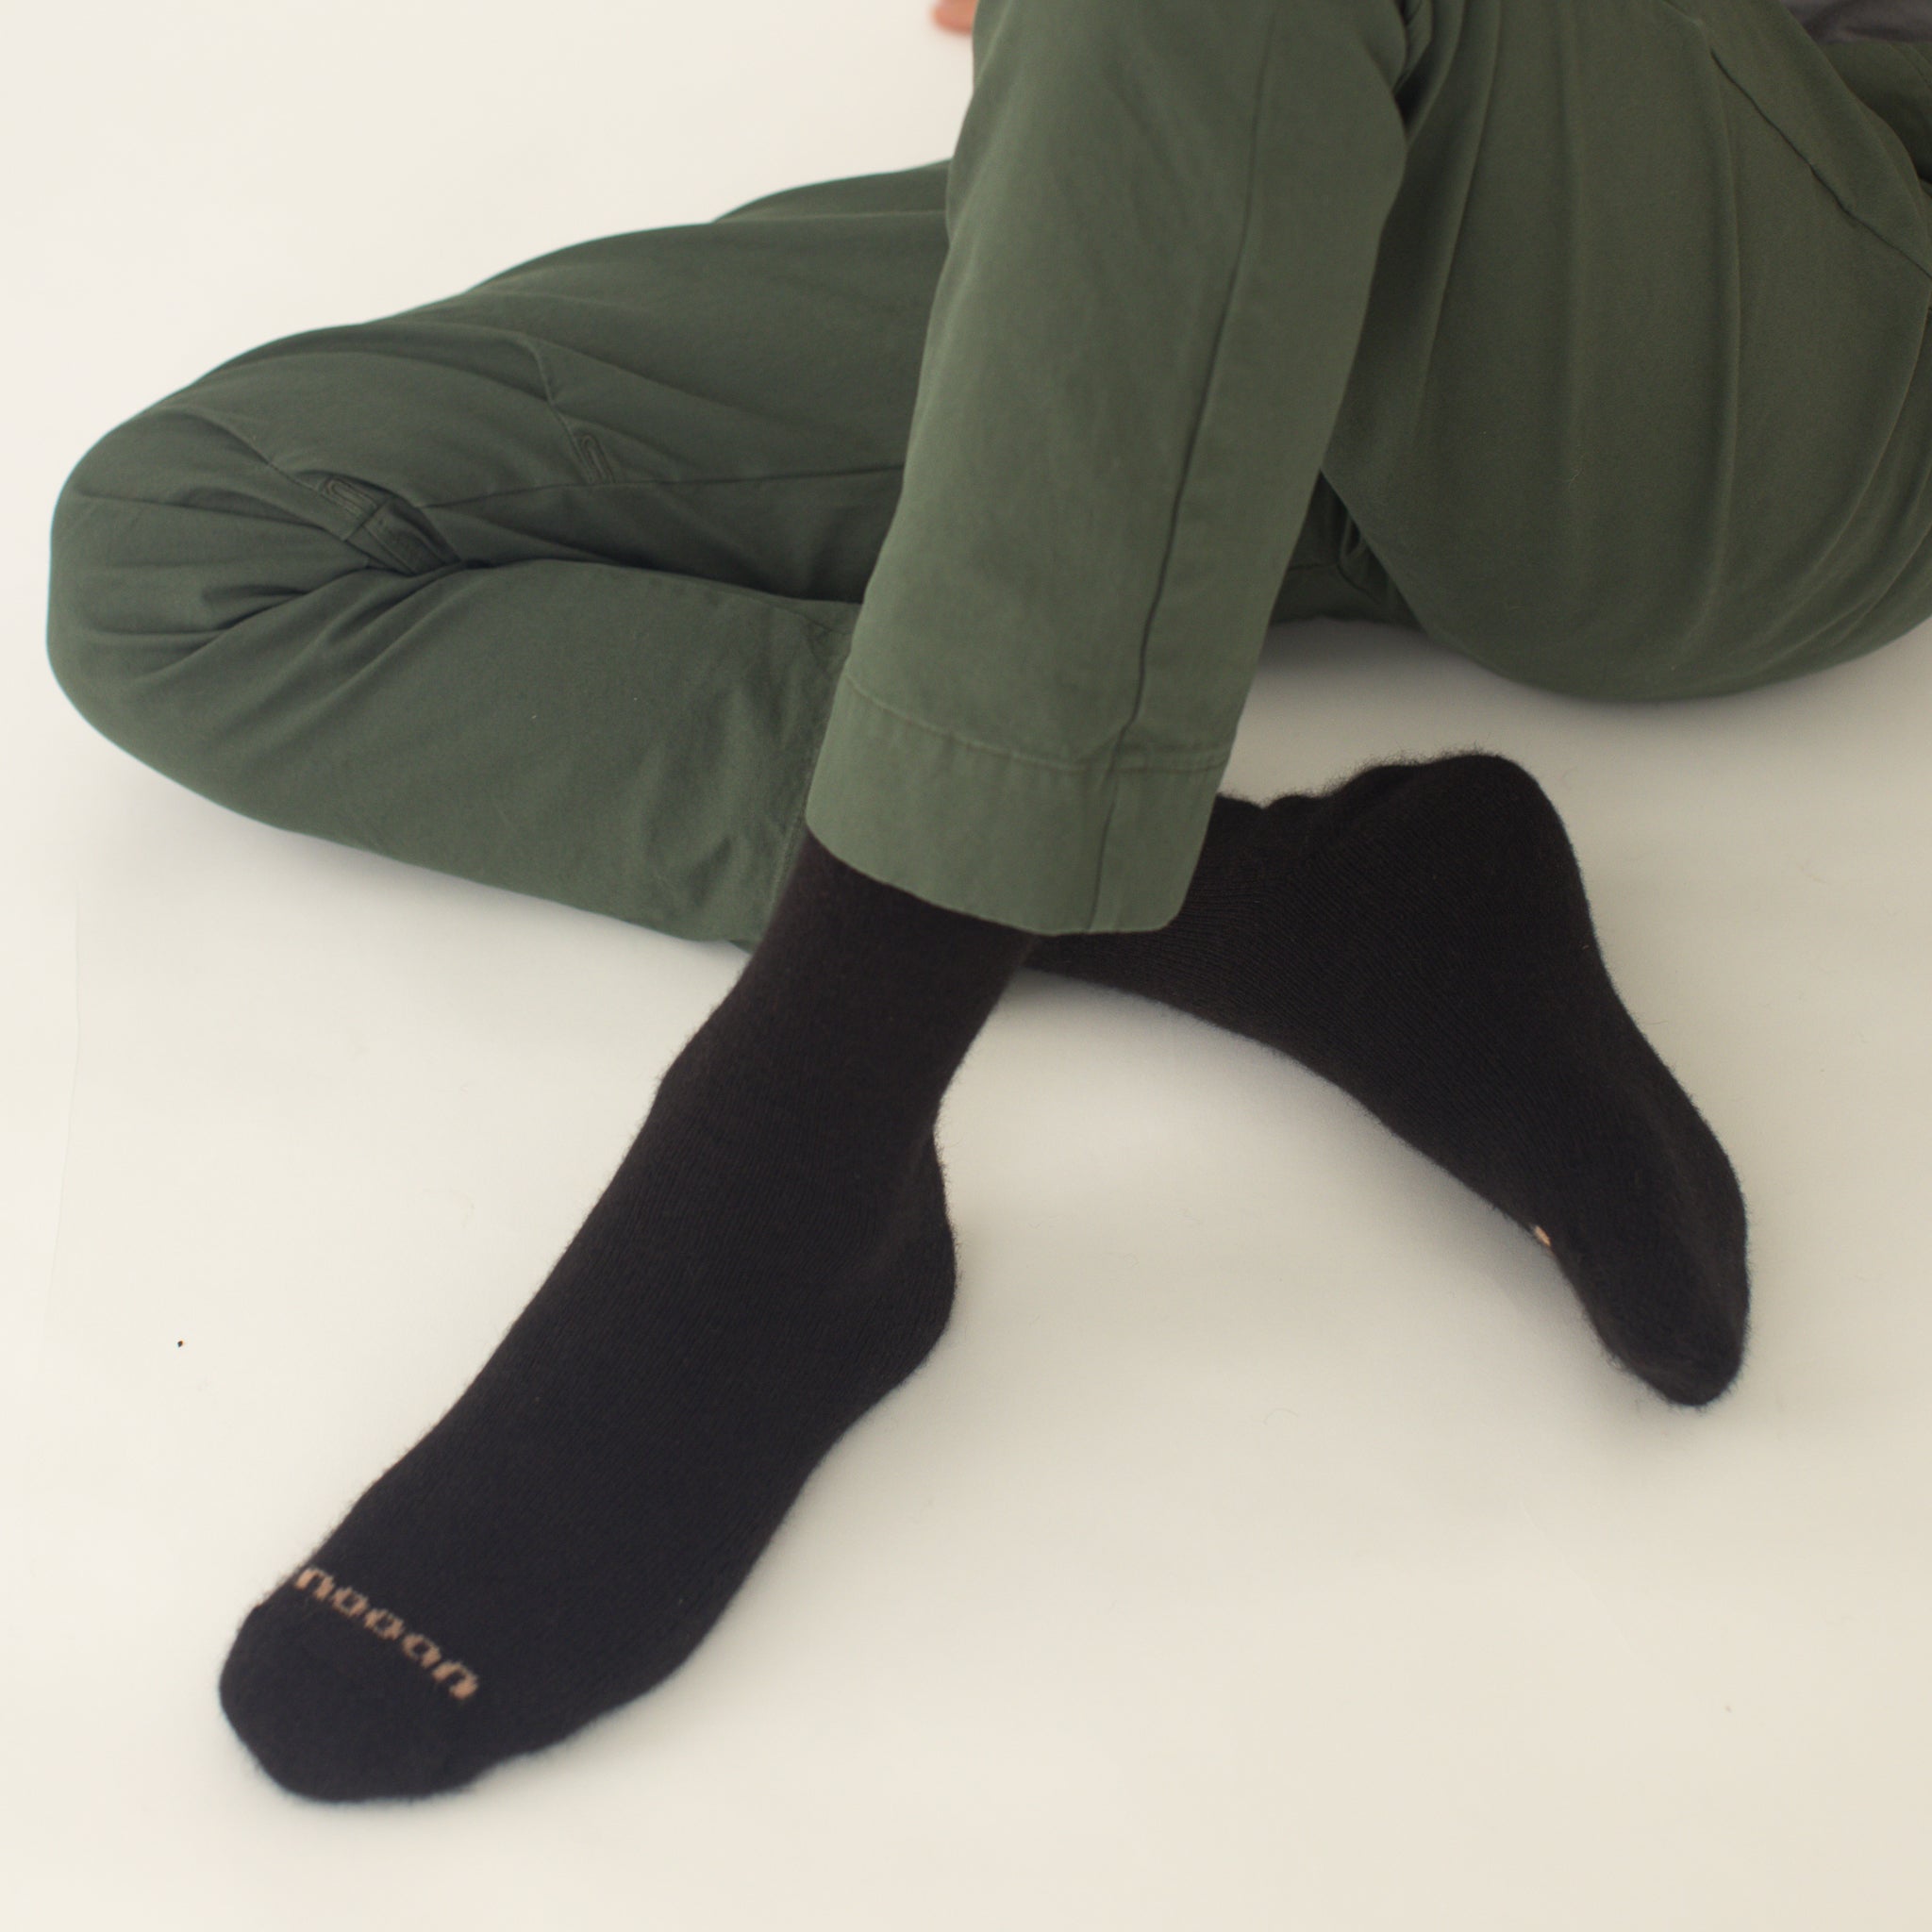 Possum Merino Wool PIHA Socks, Seal Brown Men